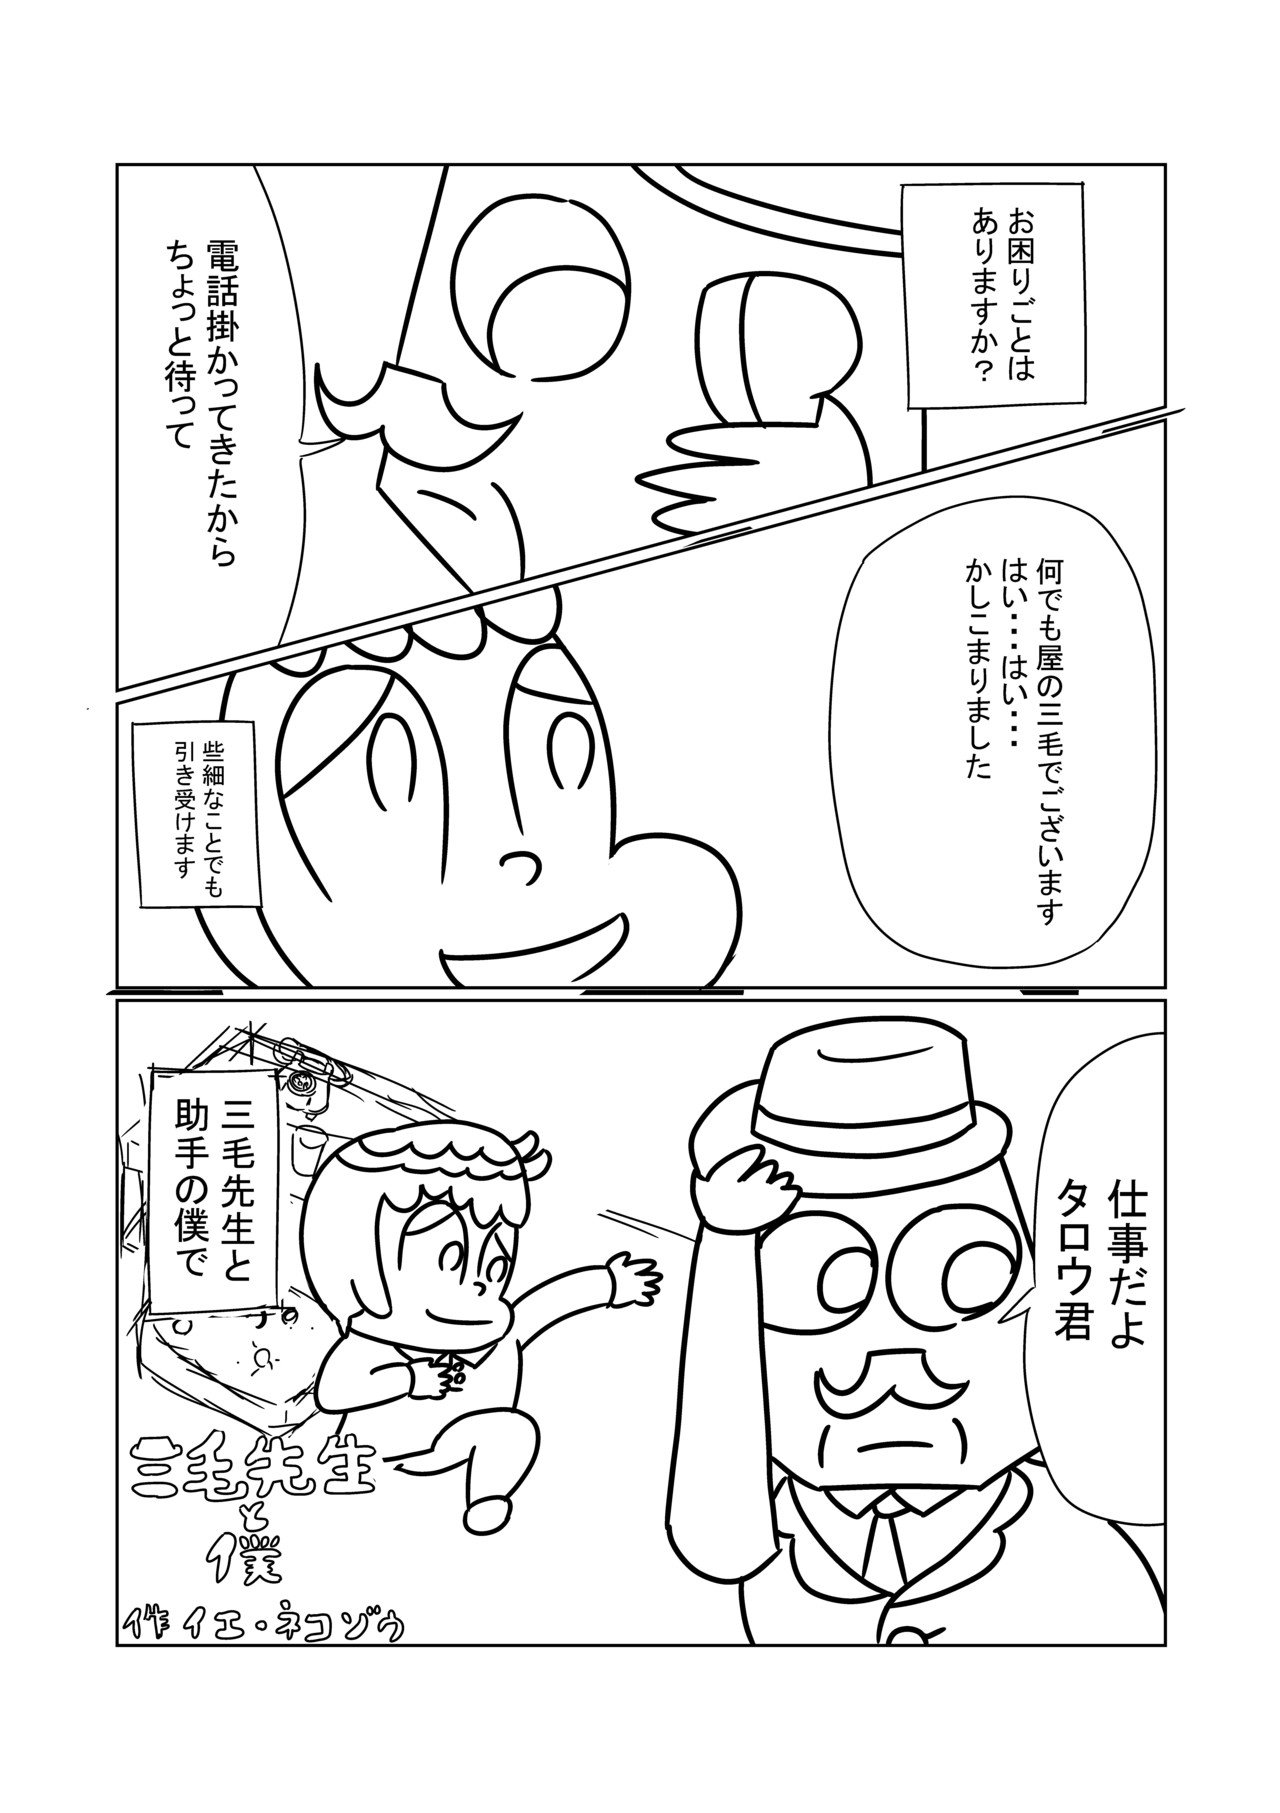 新作漫画2_表紙_